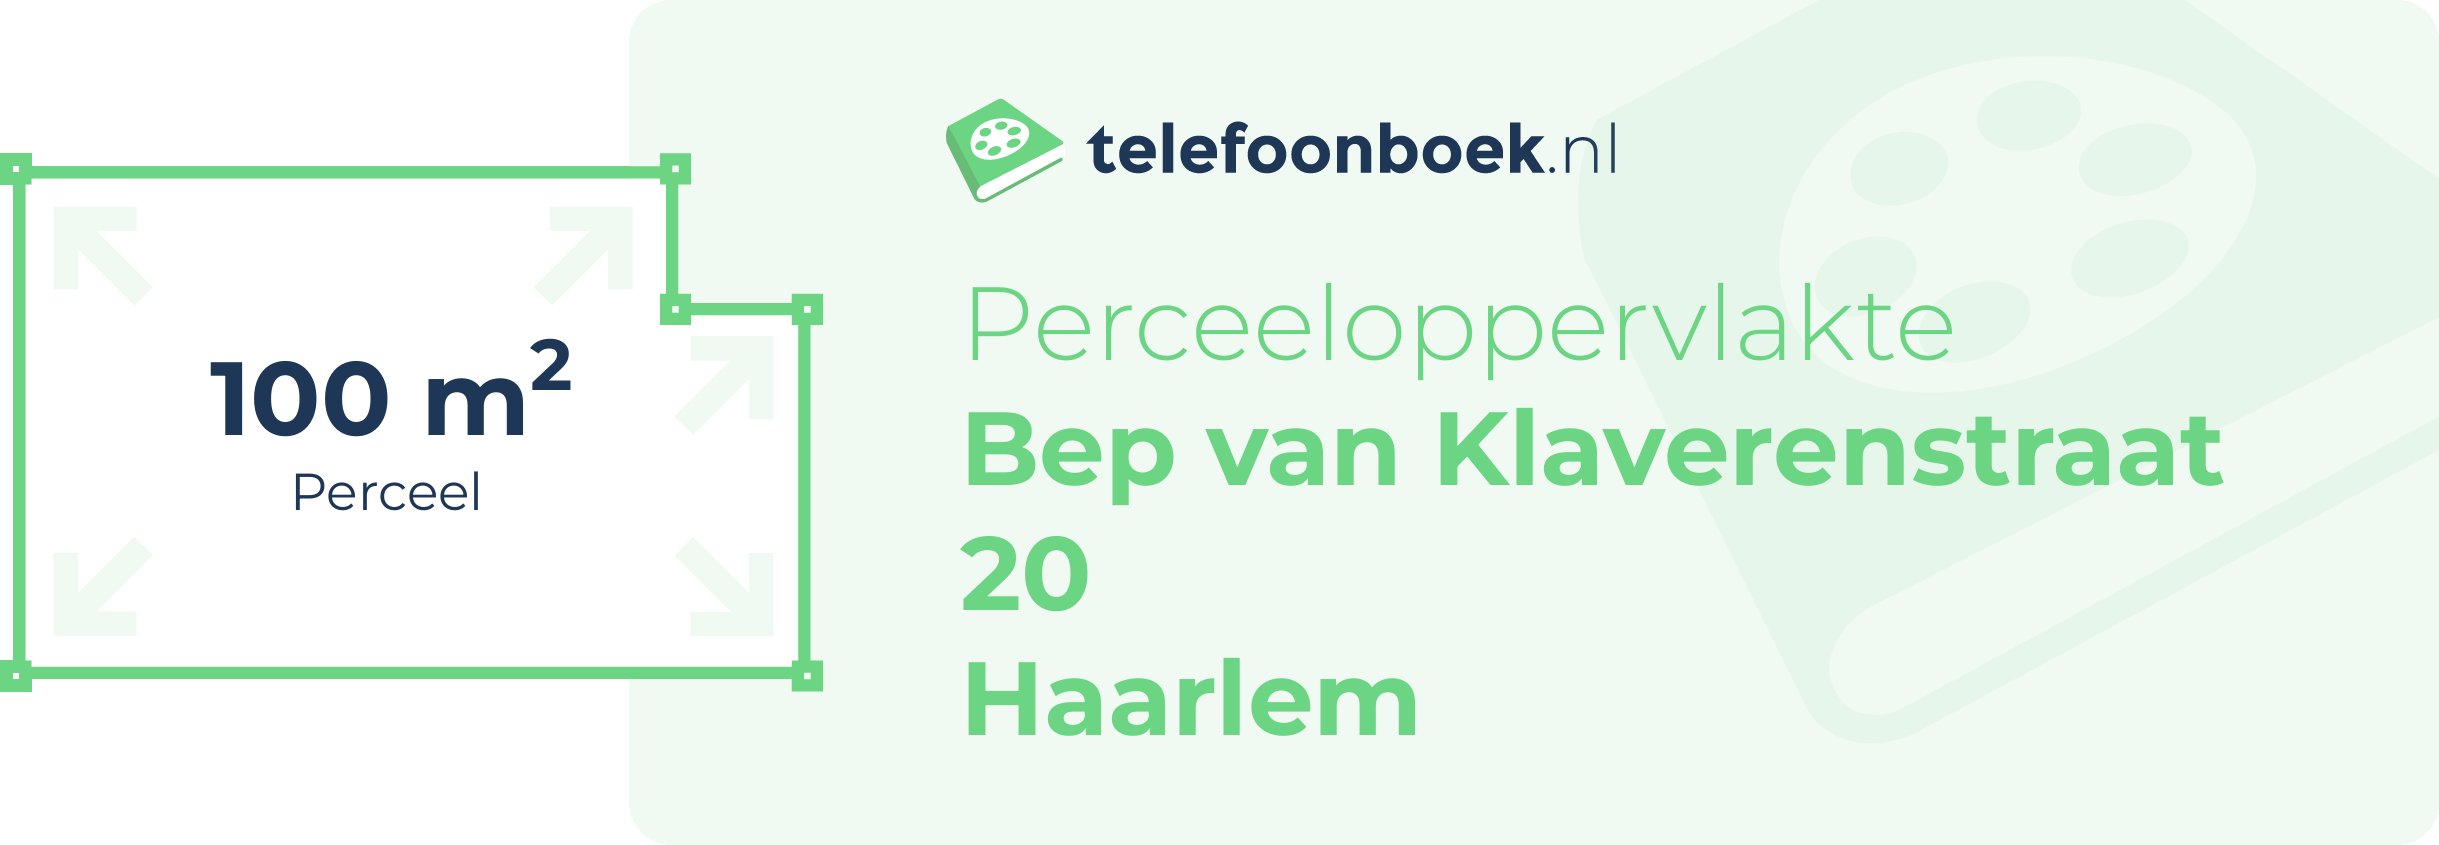 Perceeloppervlakte Bep Van Klaverenstraat 20 Haarlem